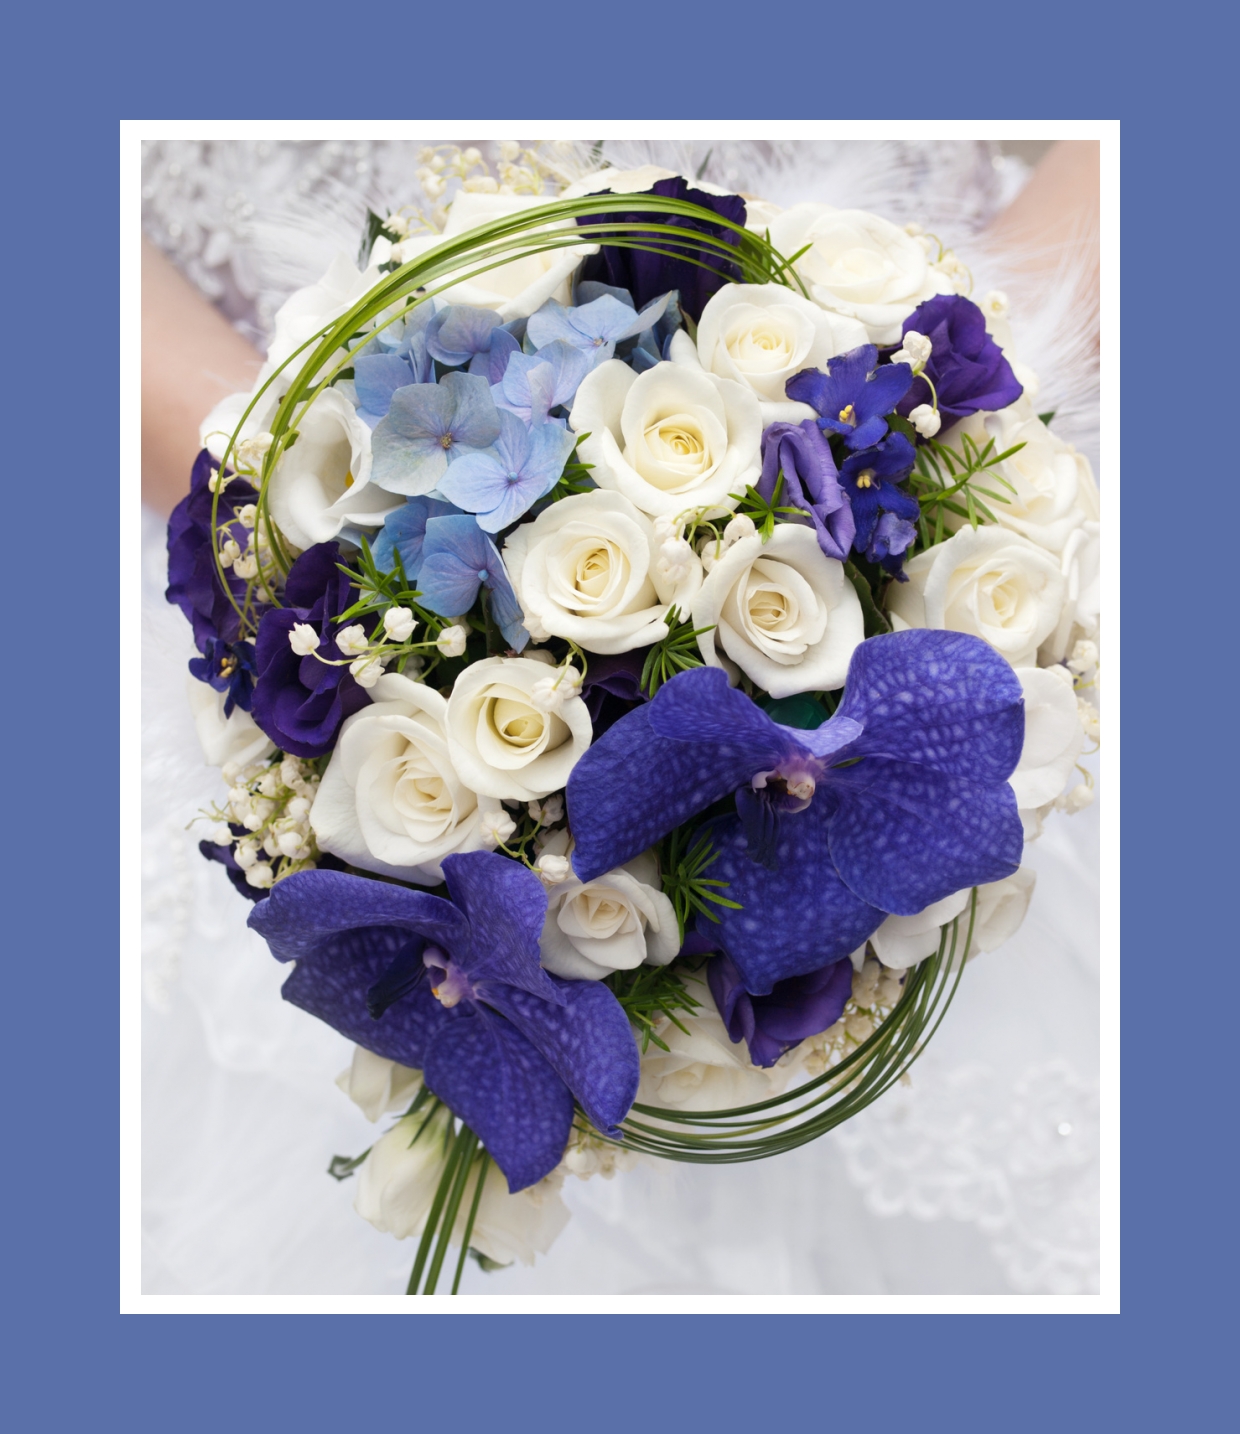 Brautstrauß aus Rosen, Orchideen und Hortensien in Weiß und Violett